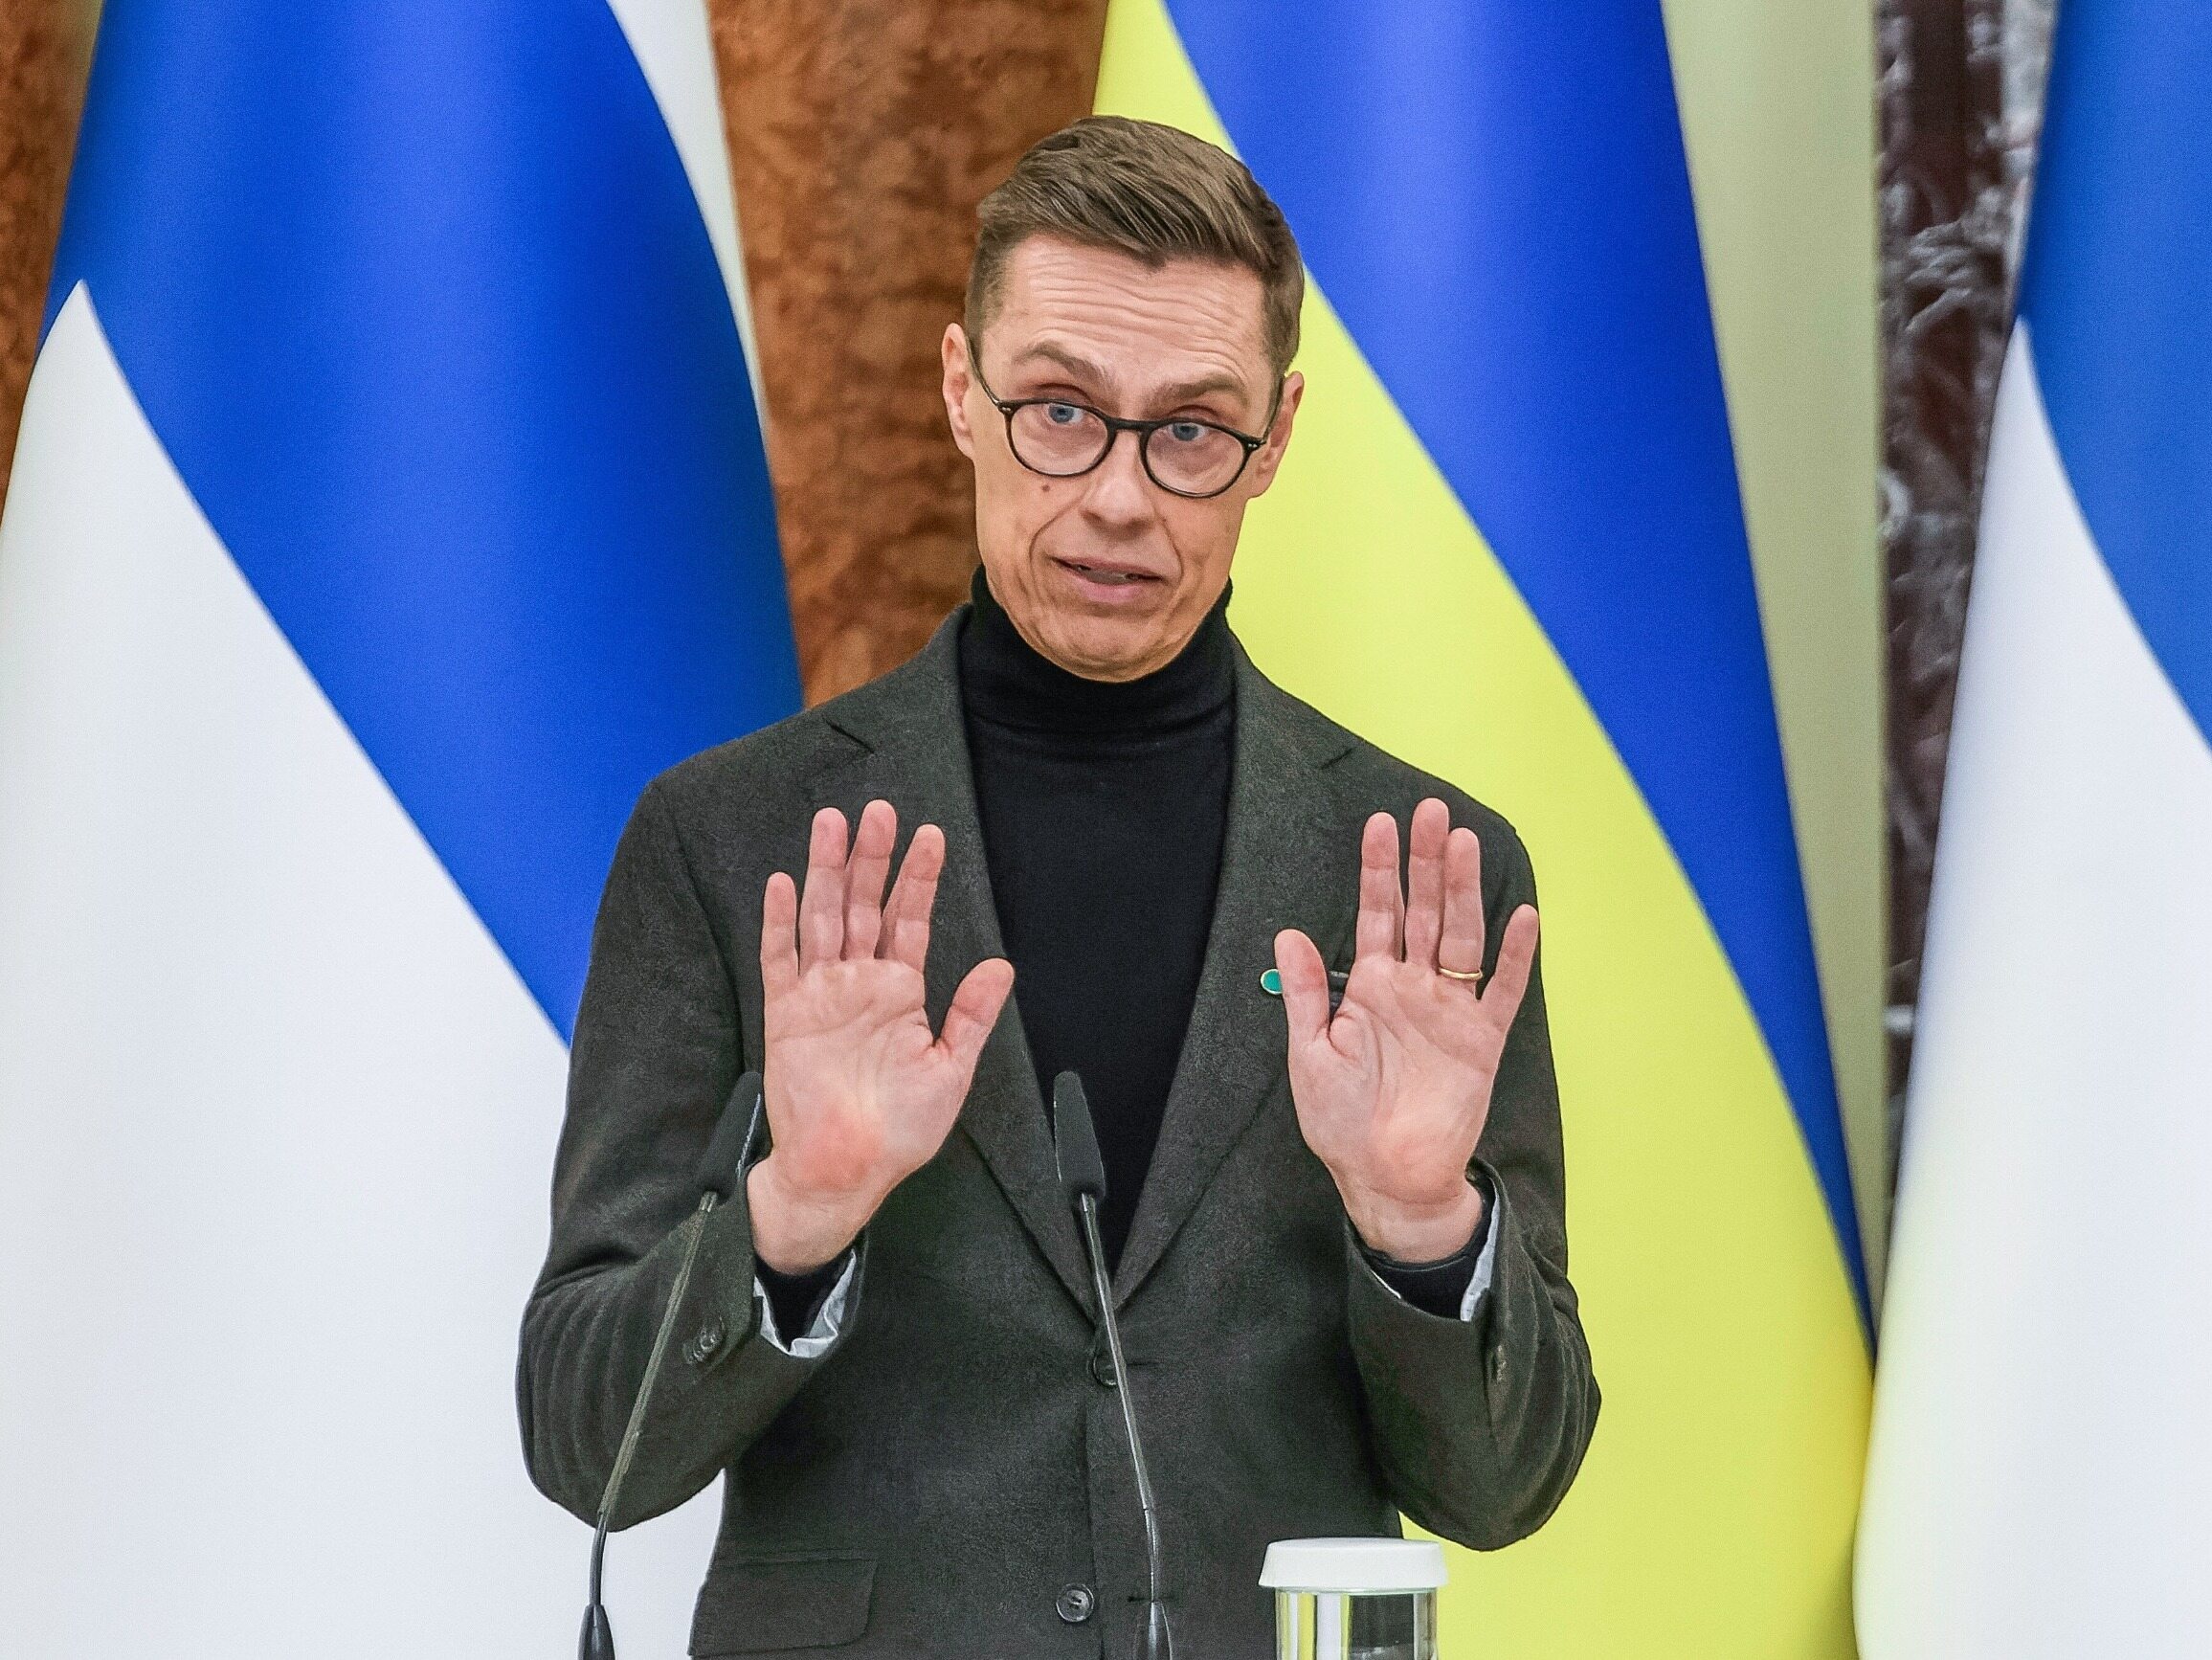 Guerra en Ucrania.  El presidente de Finlandia habla del «único camino hacia la paz»